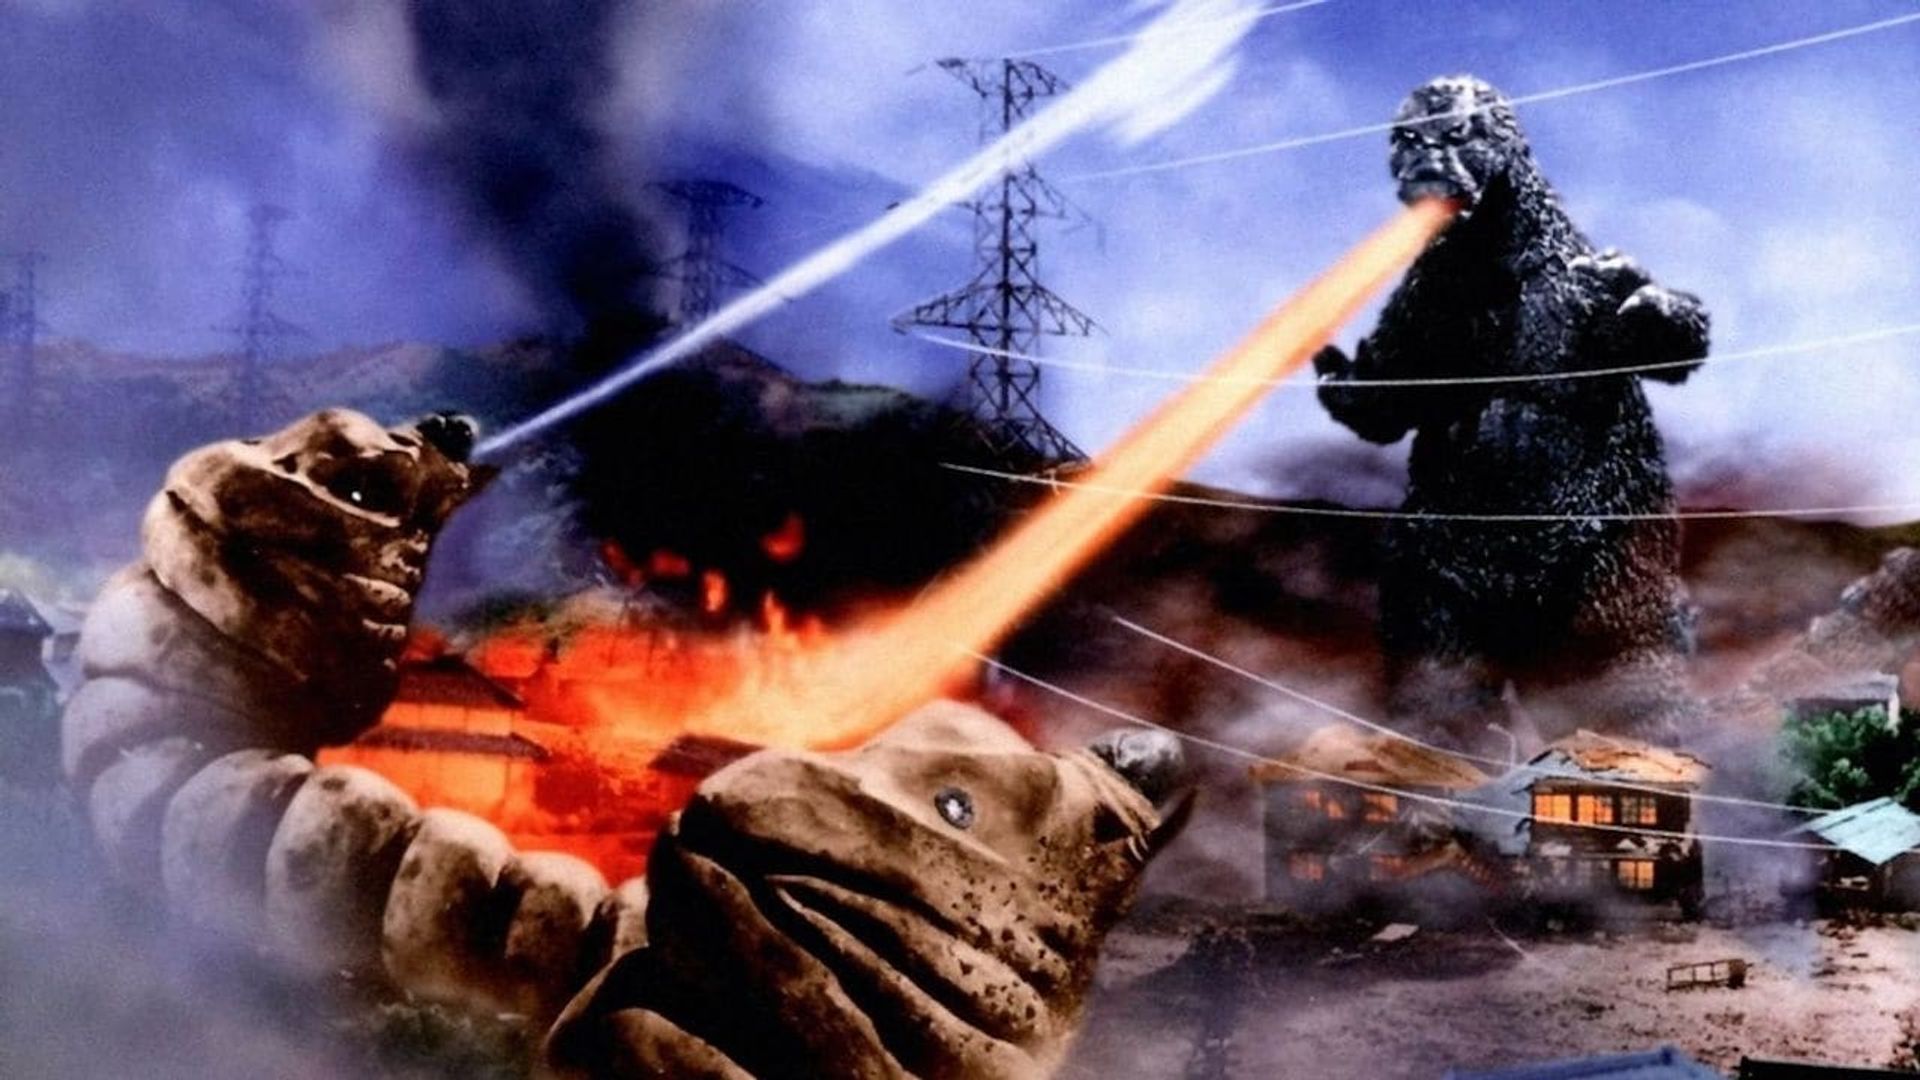 Mothra vs. Godzilla background